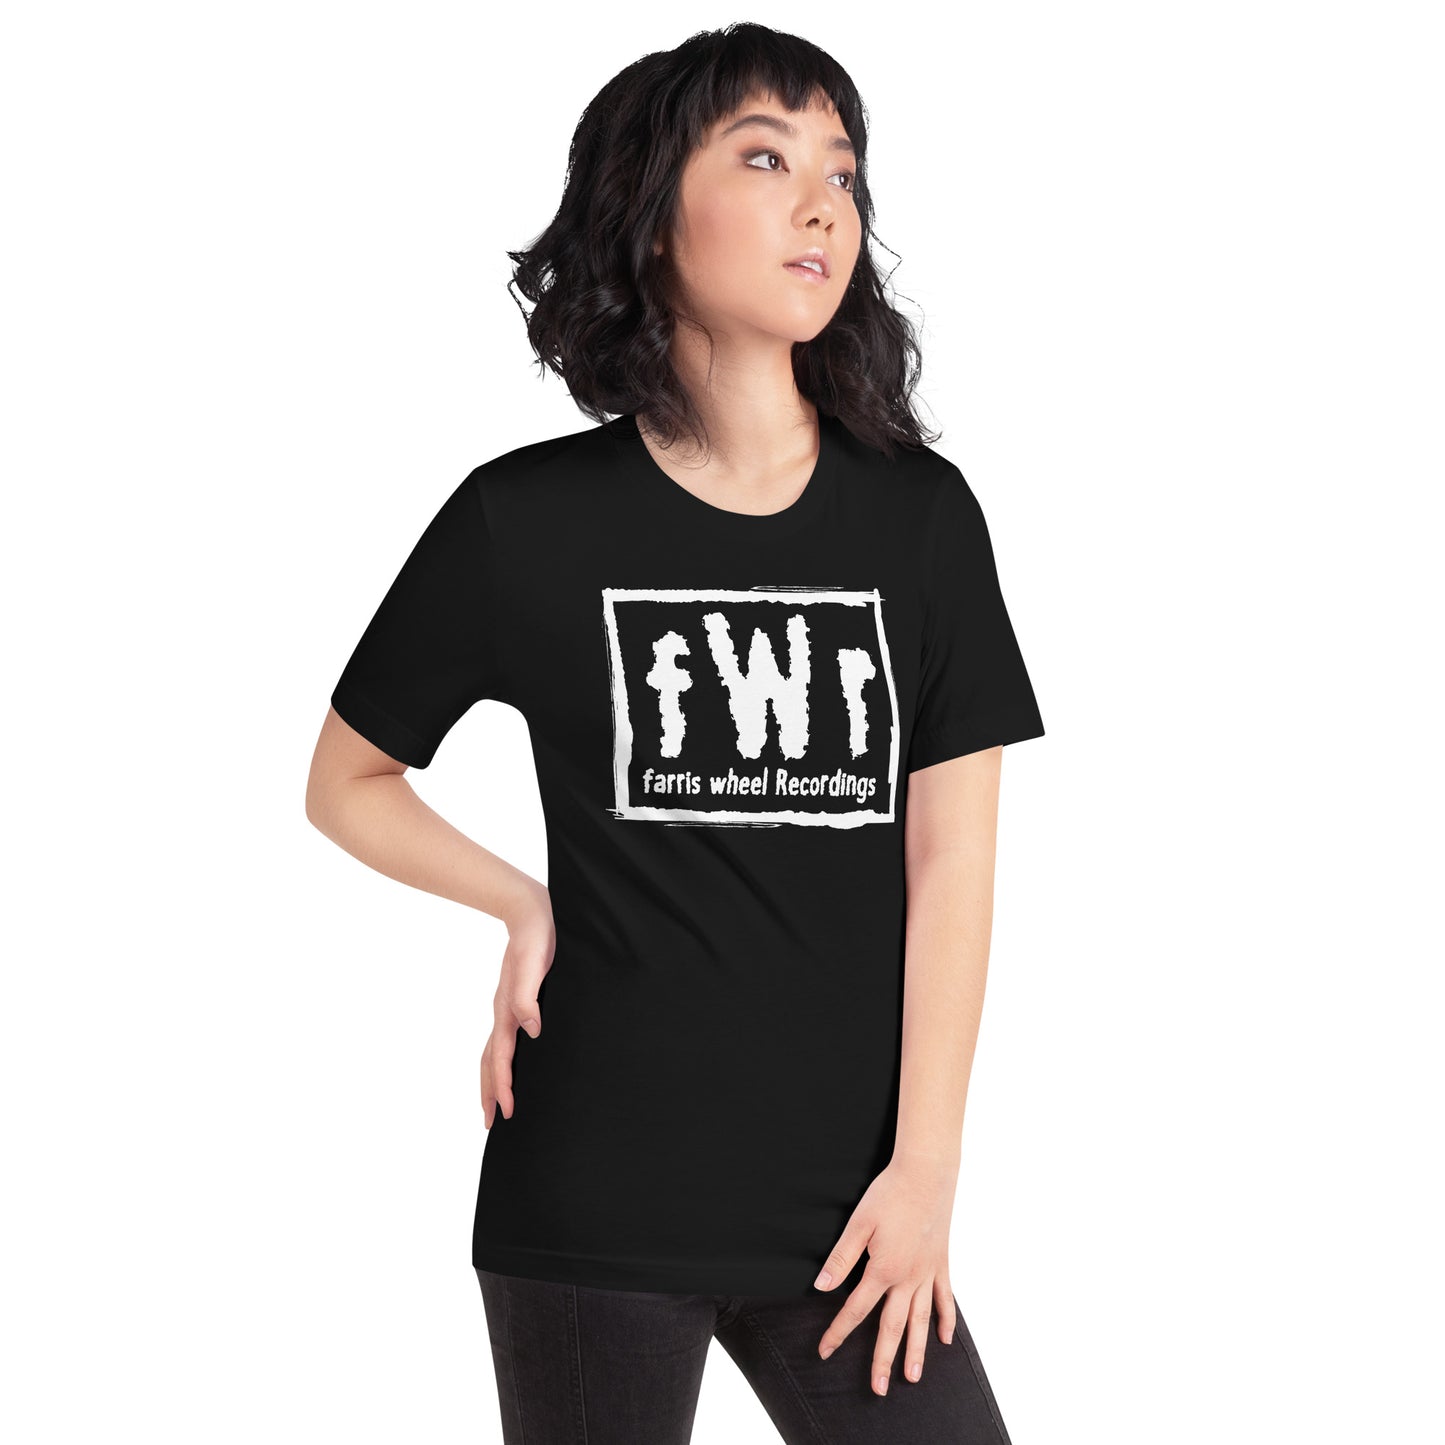 fWr Music Not Media Unisex t-shirt